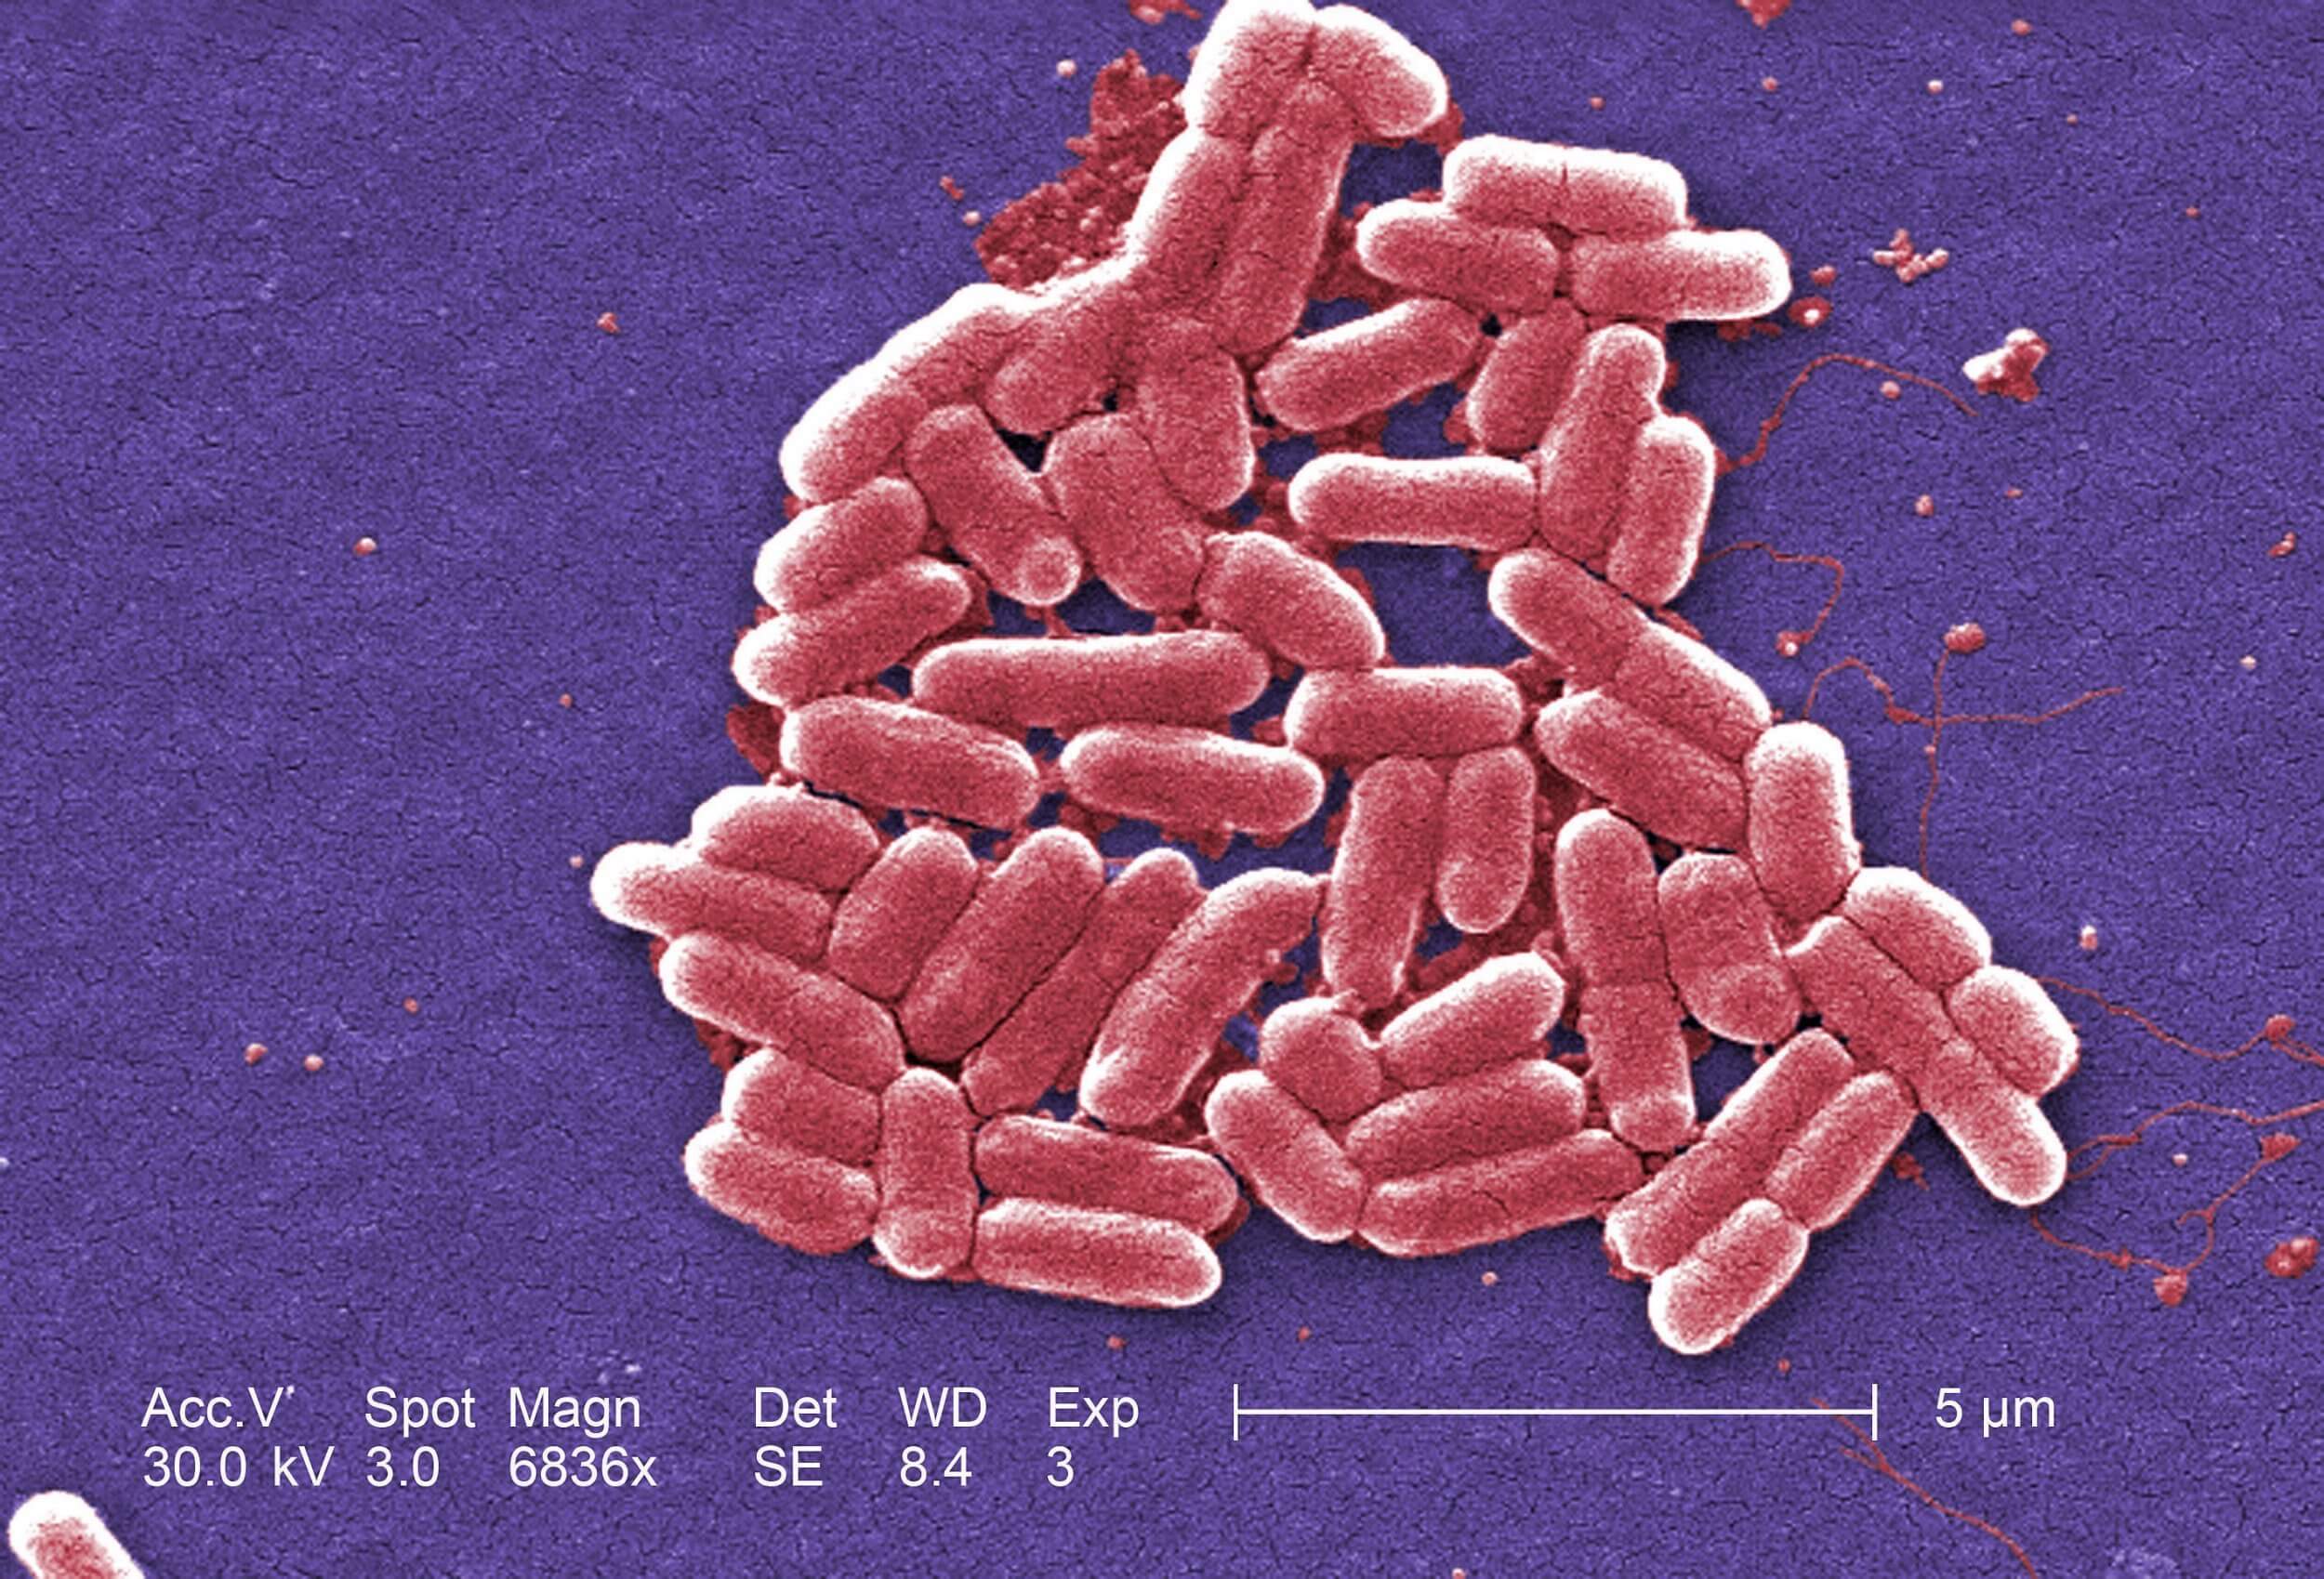 Folk, der ikke vaske deres hænder efter brug af toilet, spredning af antibiotika-resistente bakterier